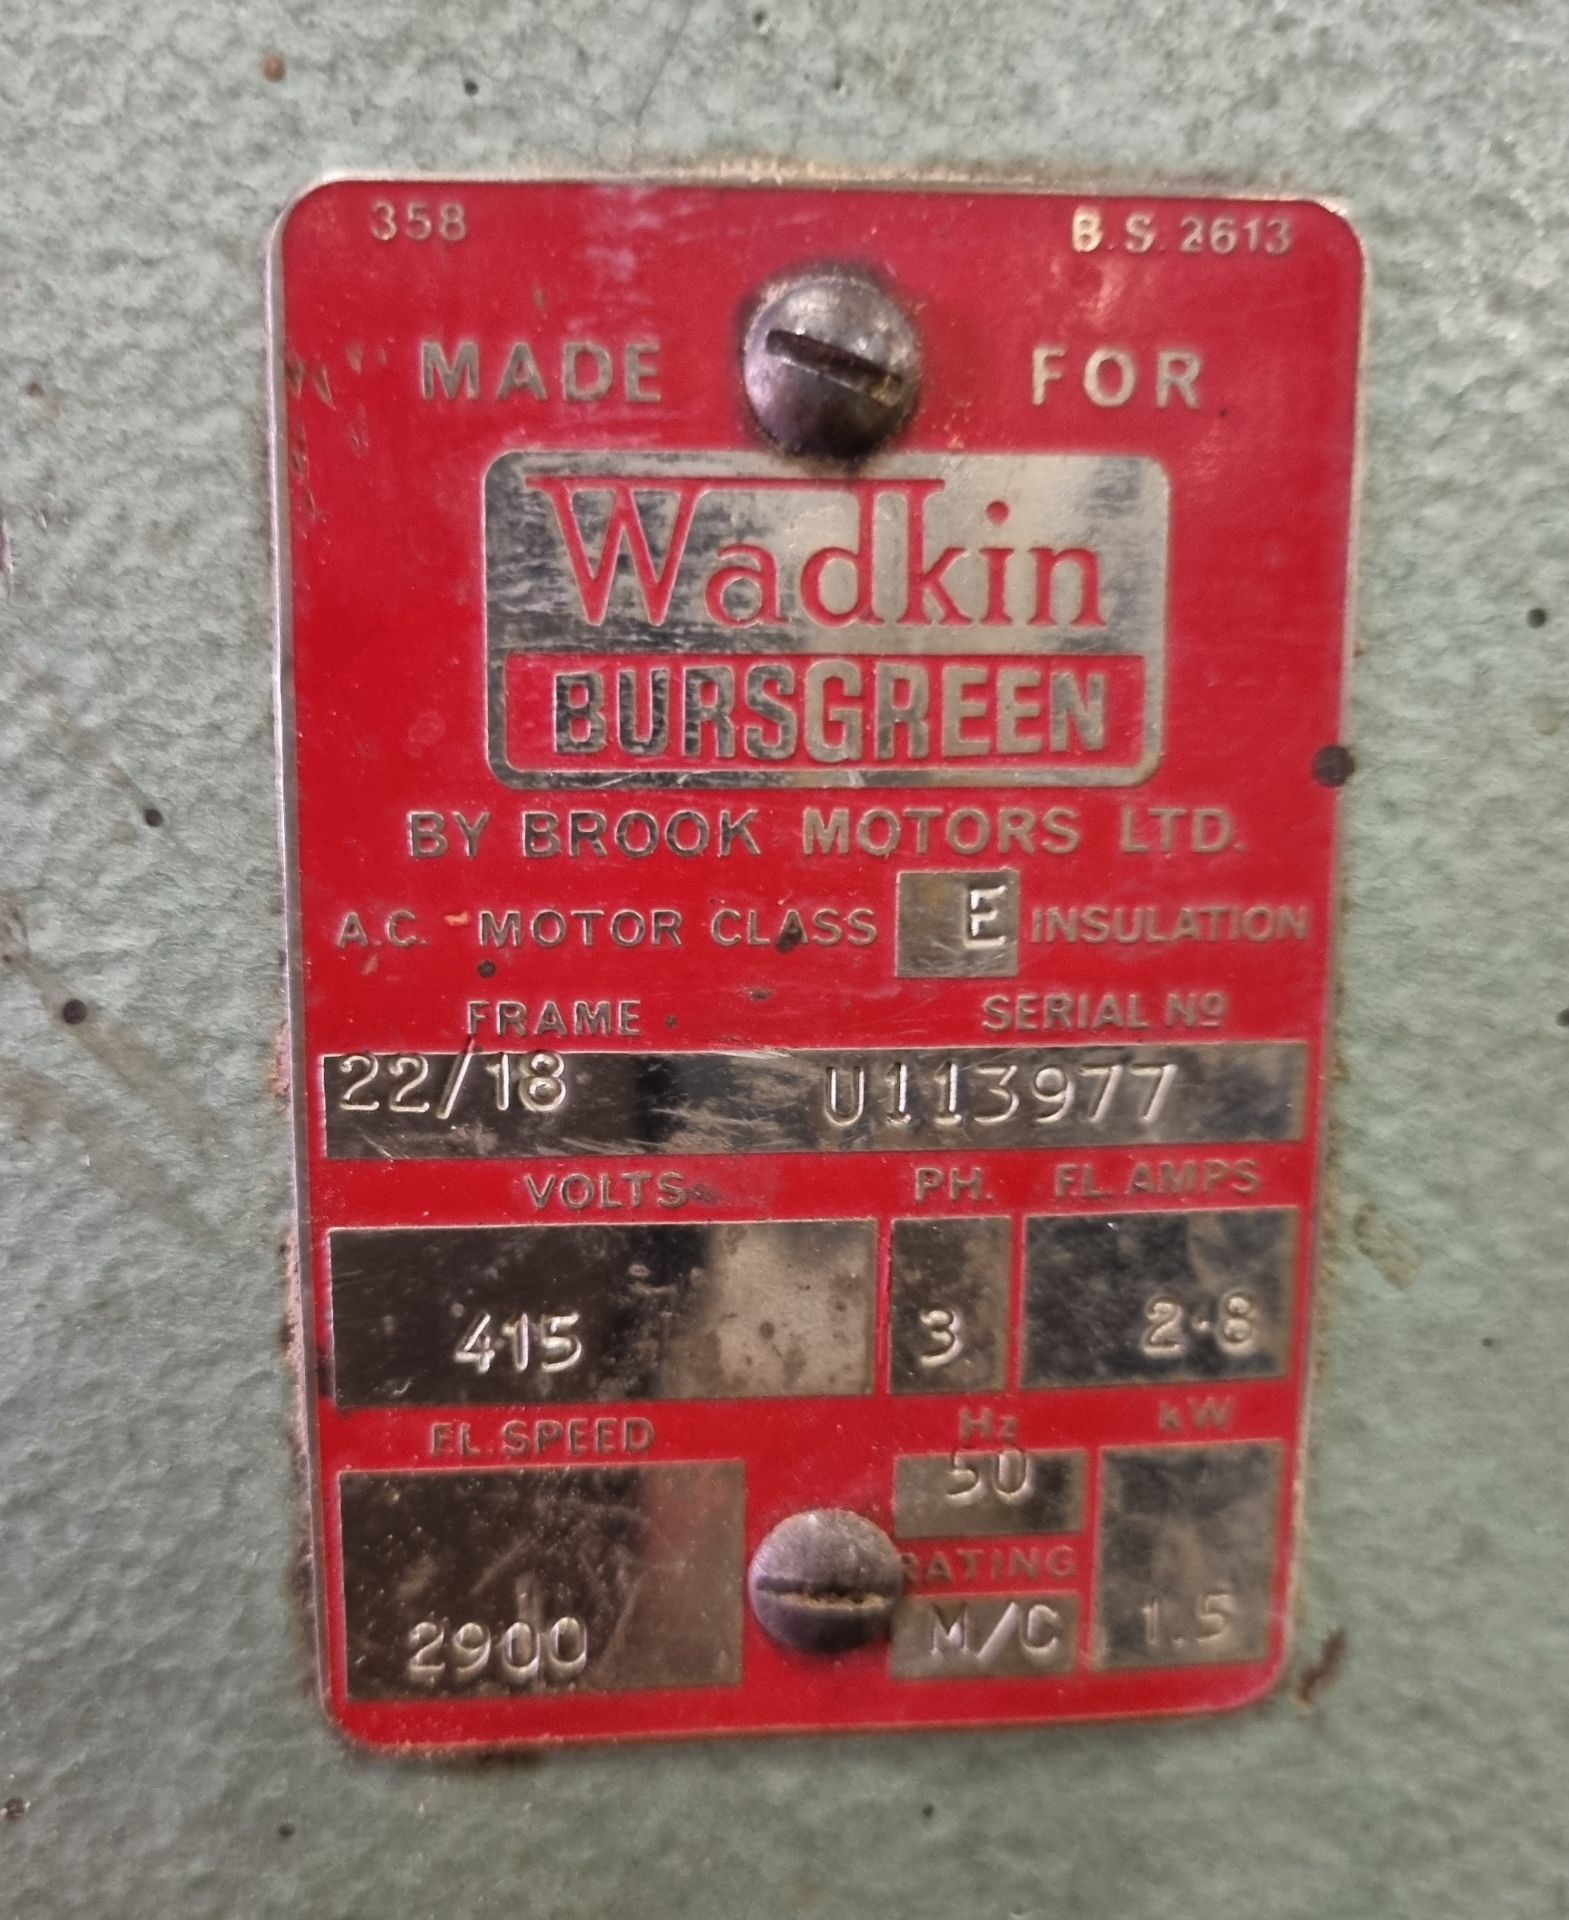 Wadkin Bursgreen pillar drill with square cut drill bit - Machine No: DM 723080 - 415V - L 1000 - Image 5 of 9